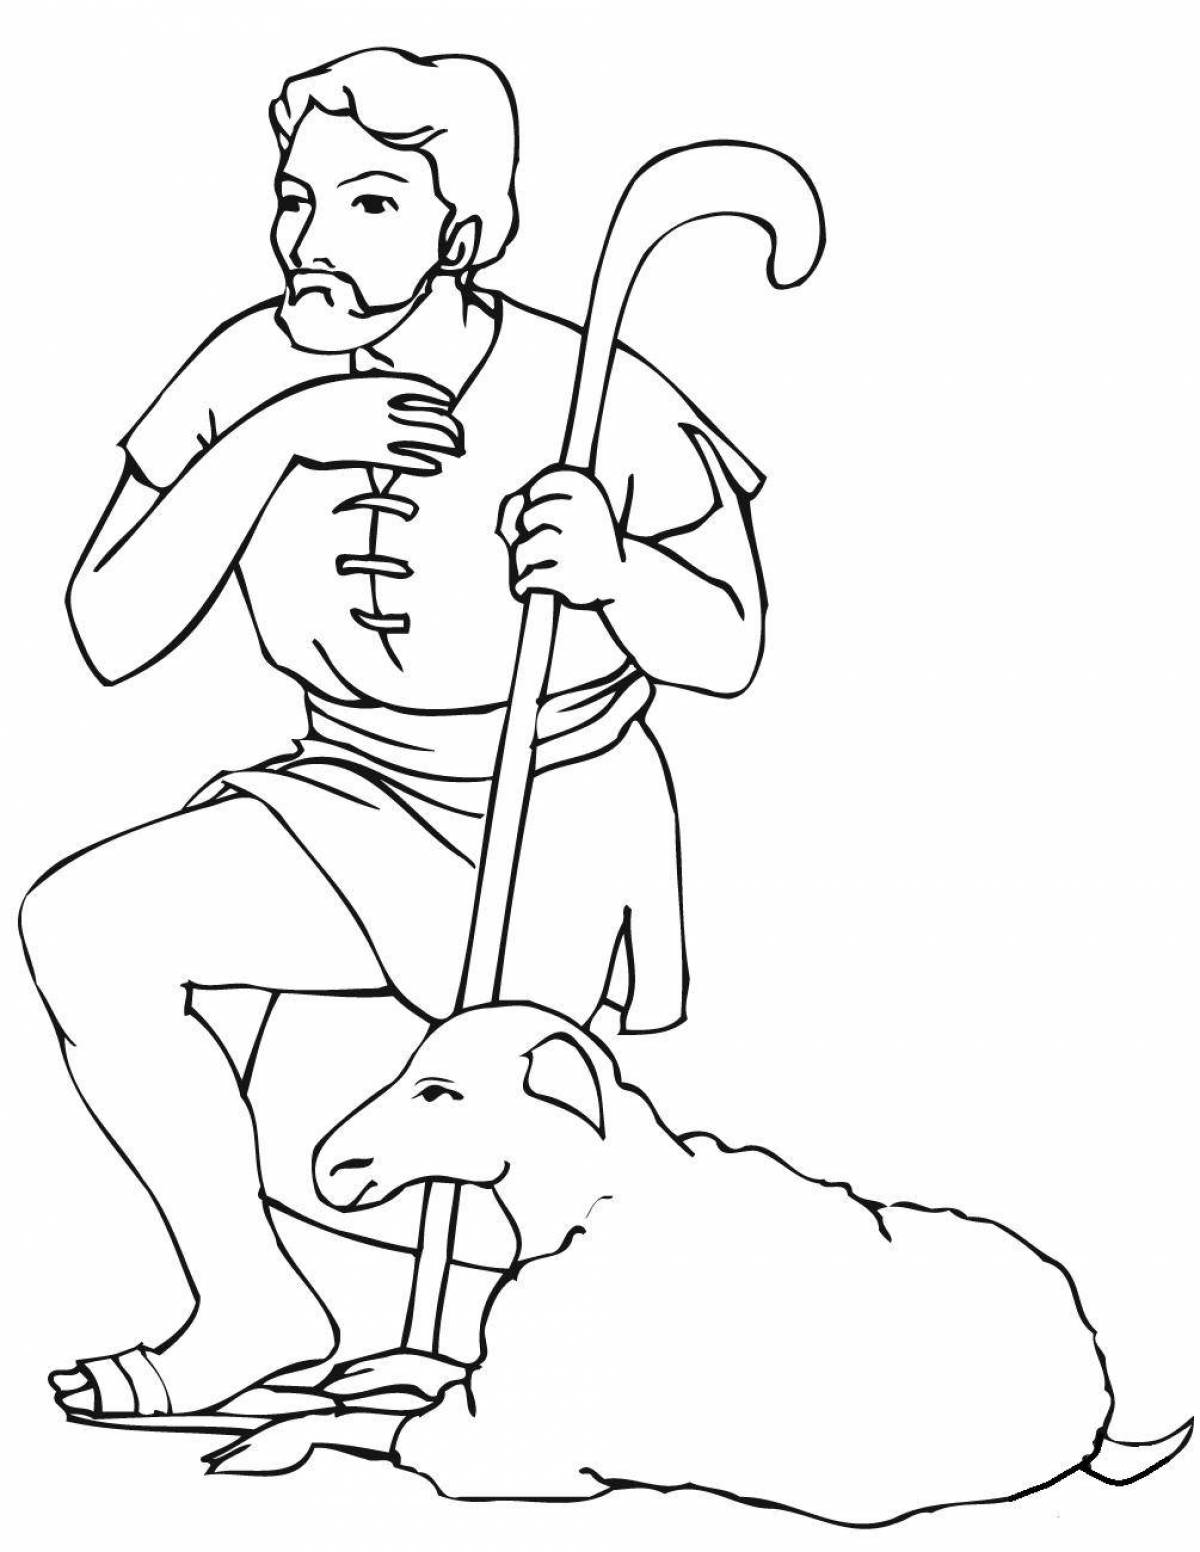 Coloring animated shepherd lel